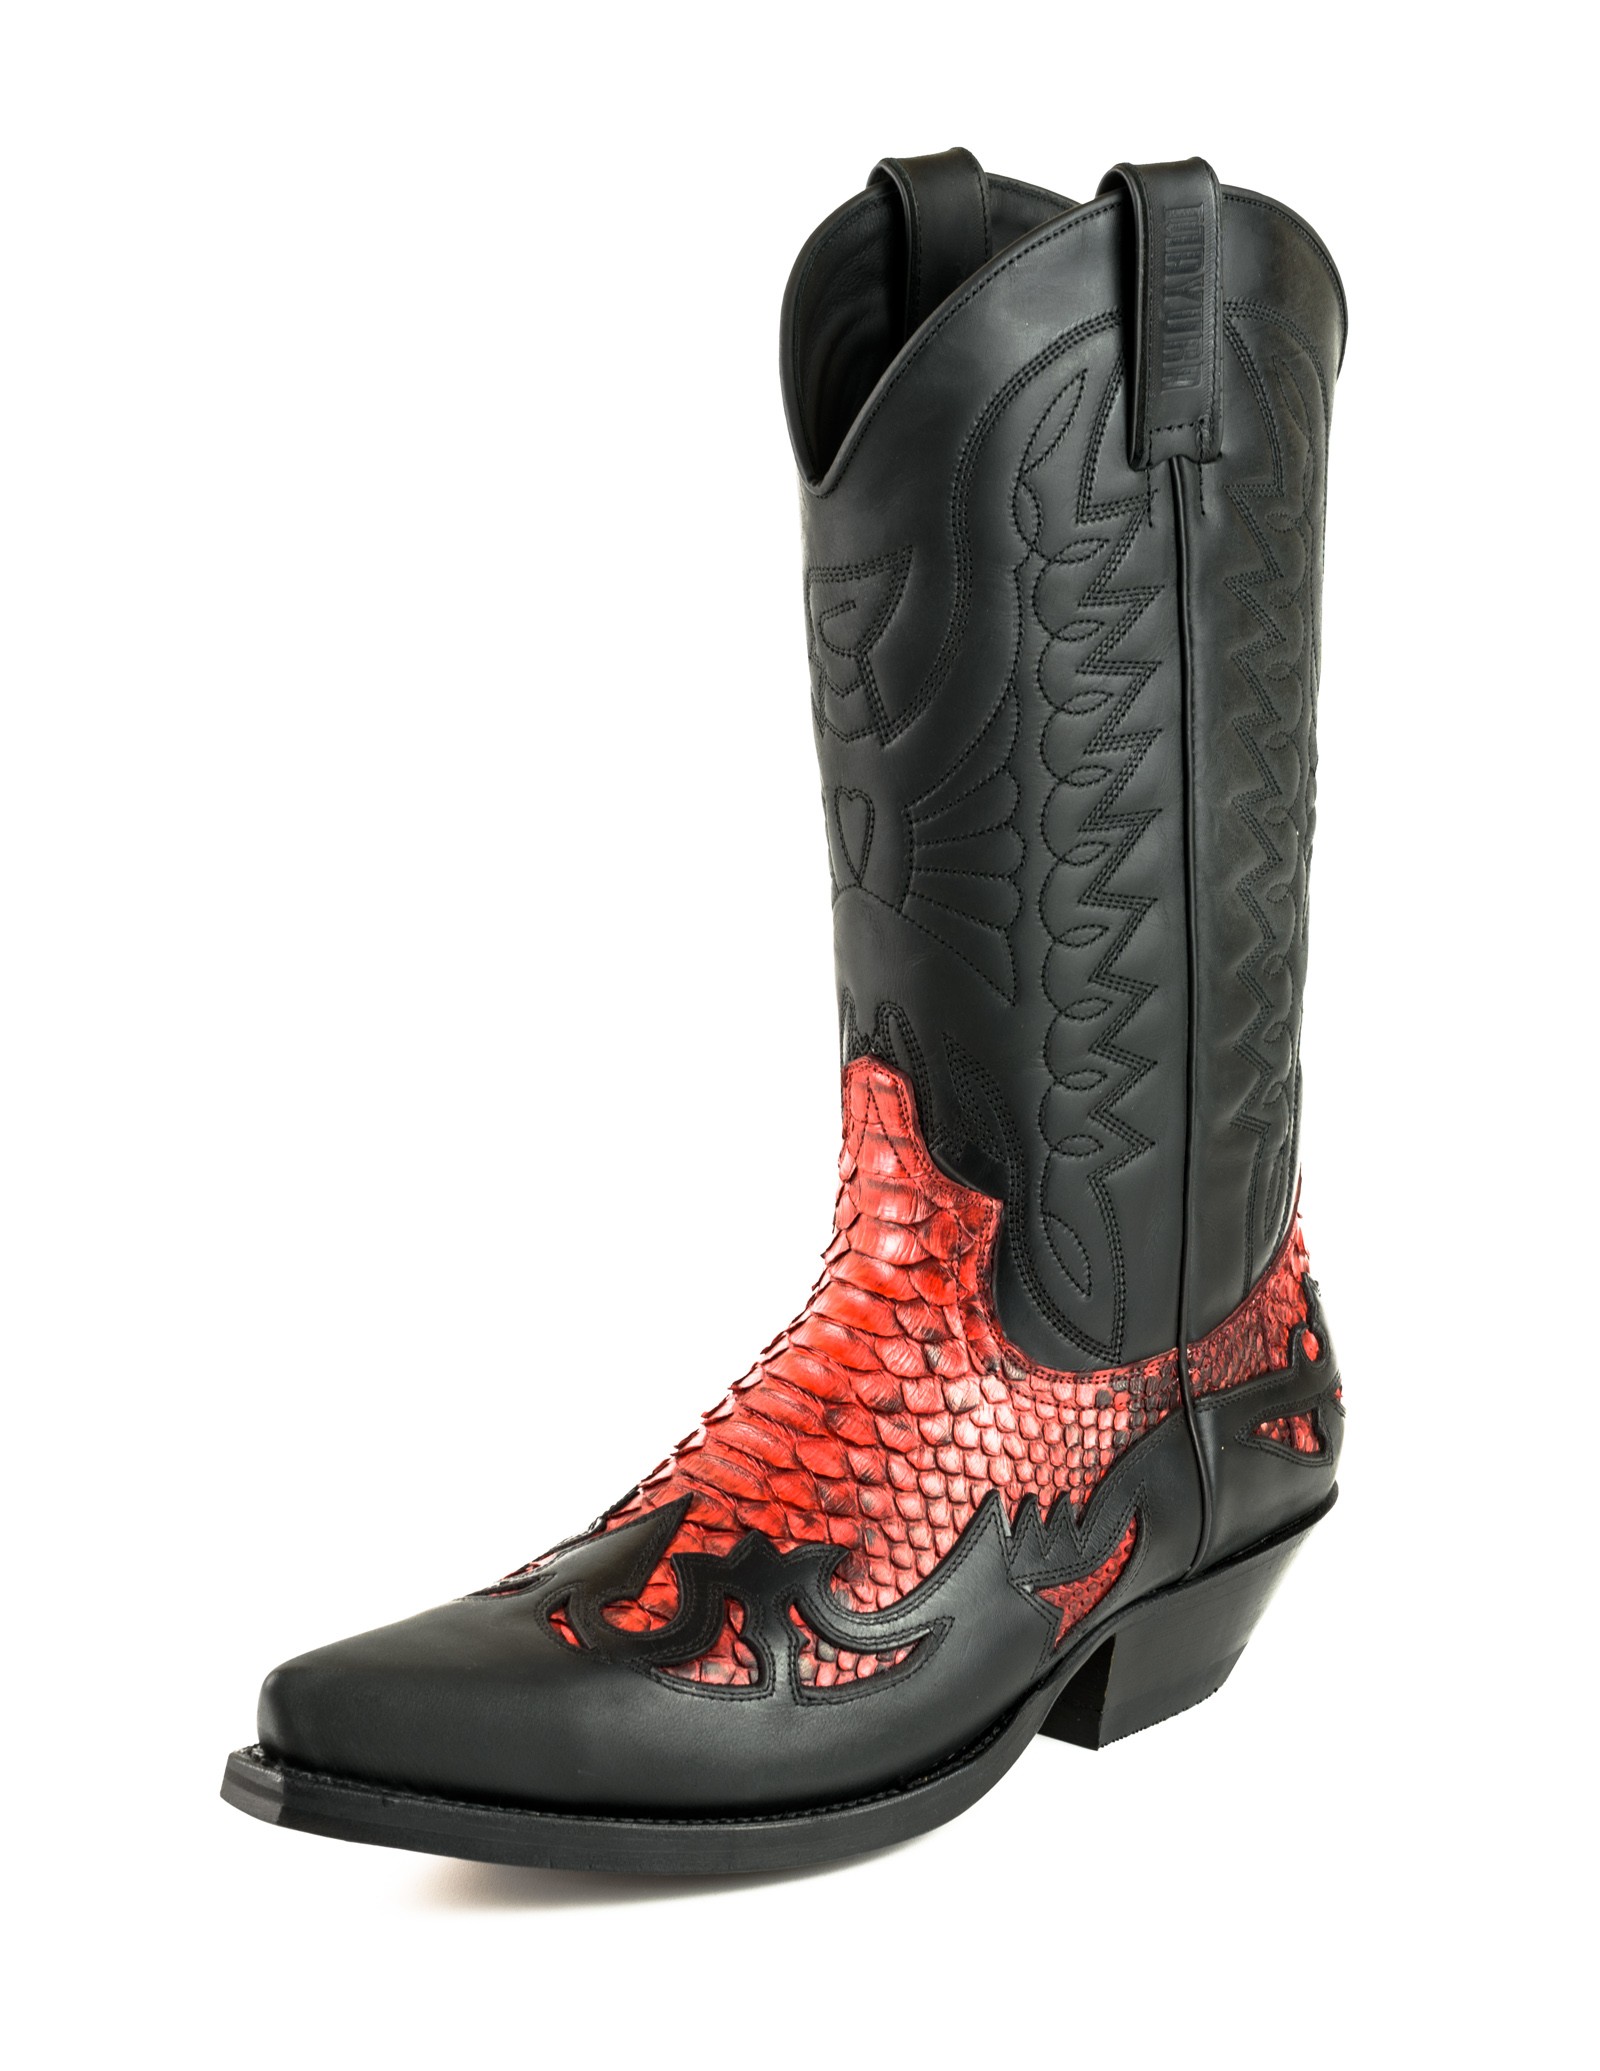 Mens Red Snakeskin Boots Online | bellvalefarms.com